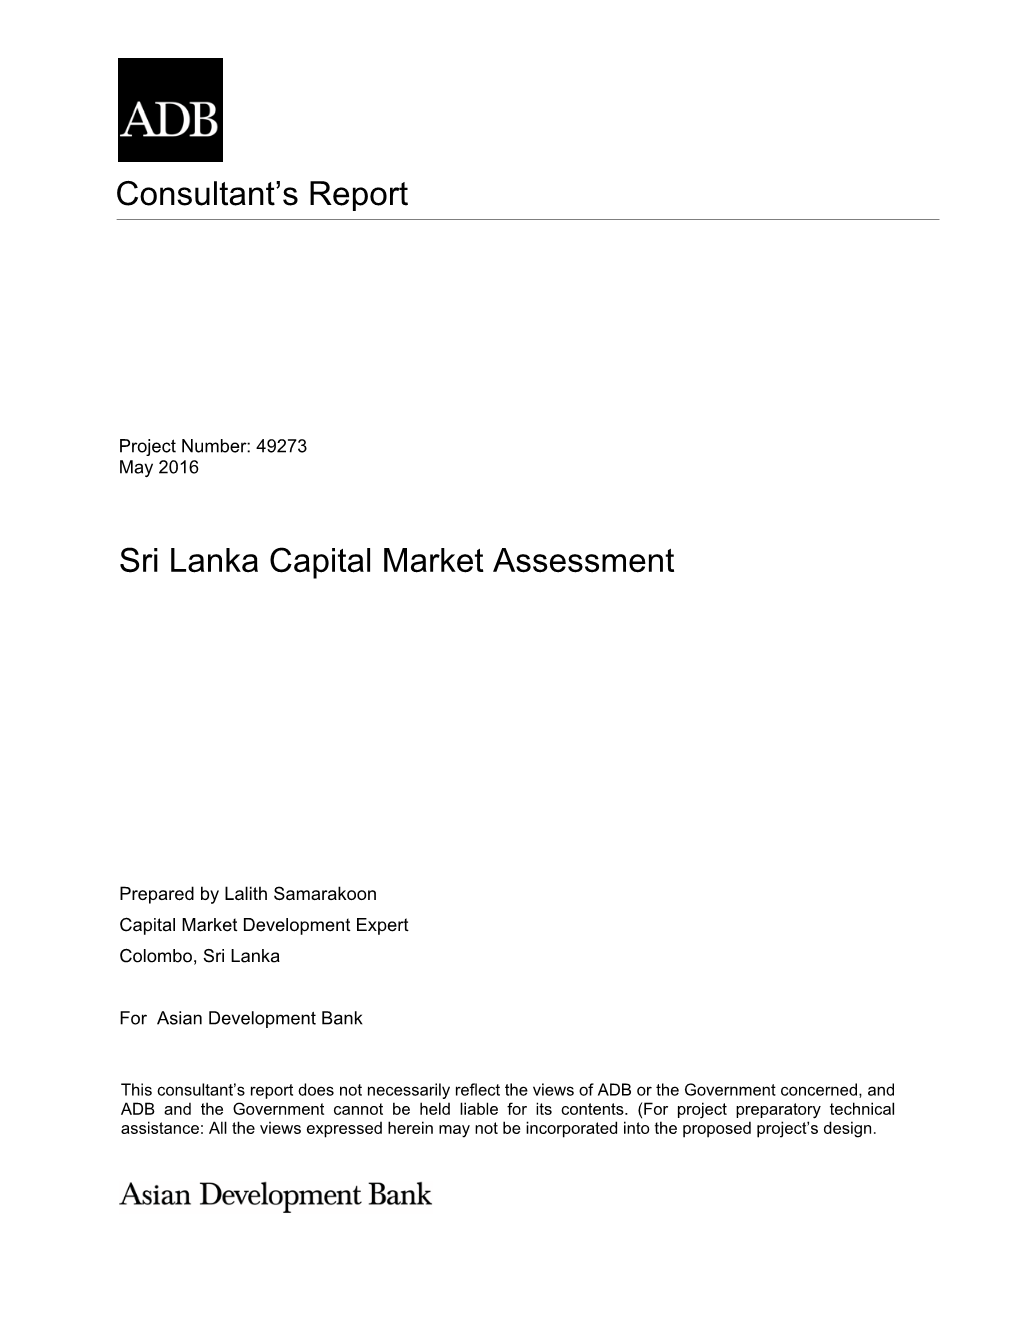 Consultant's Report Sri Lanka Capital Market Assessment